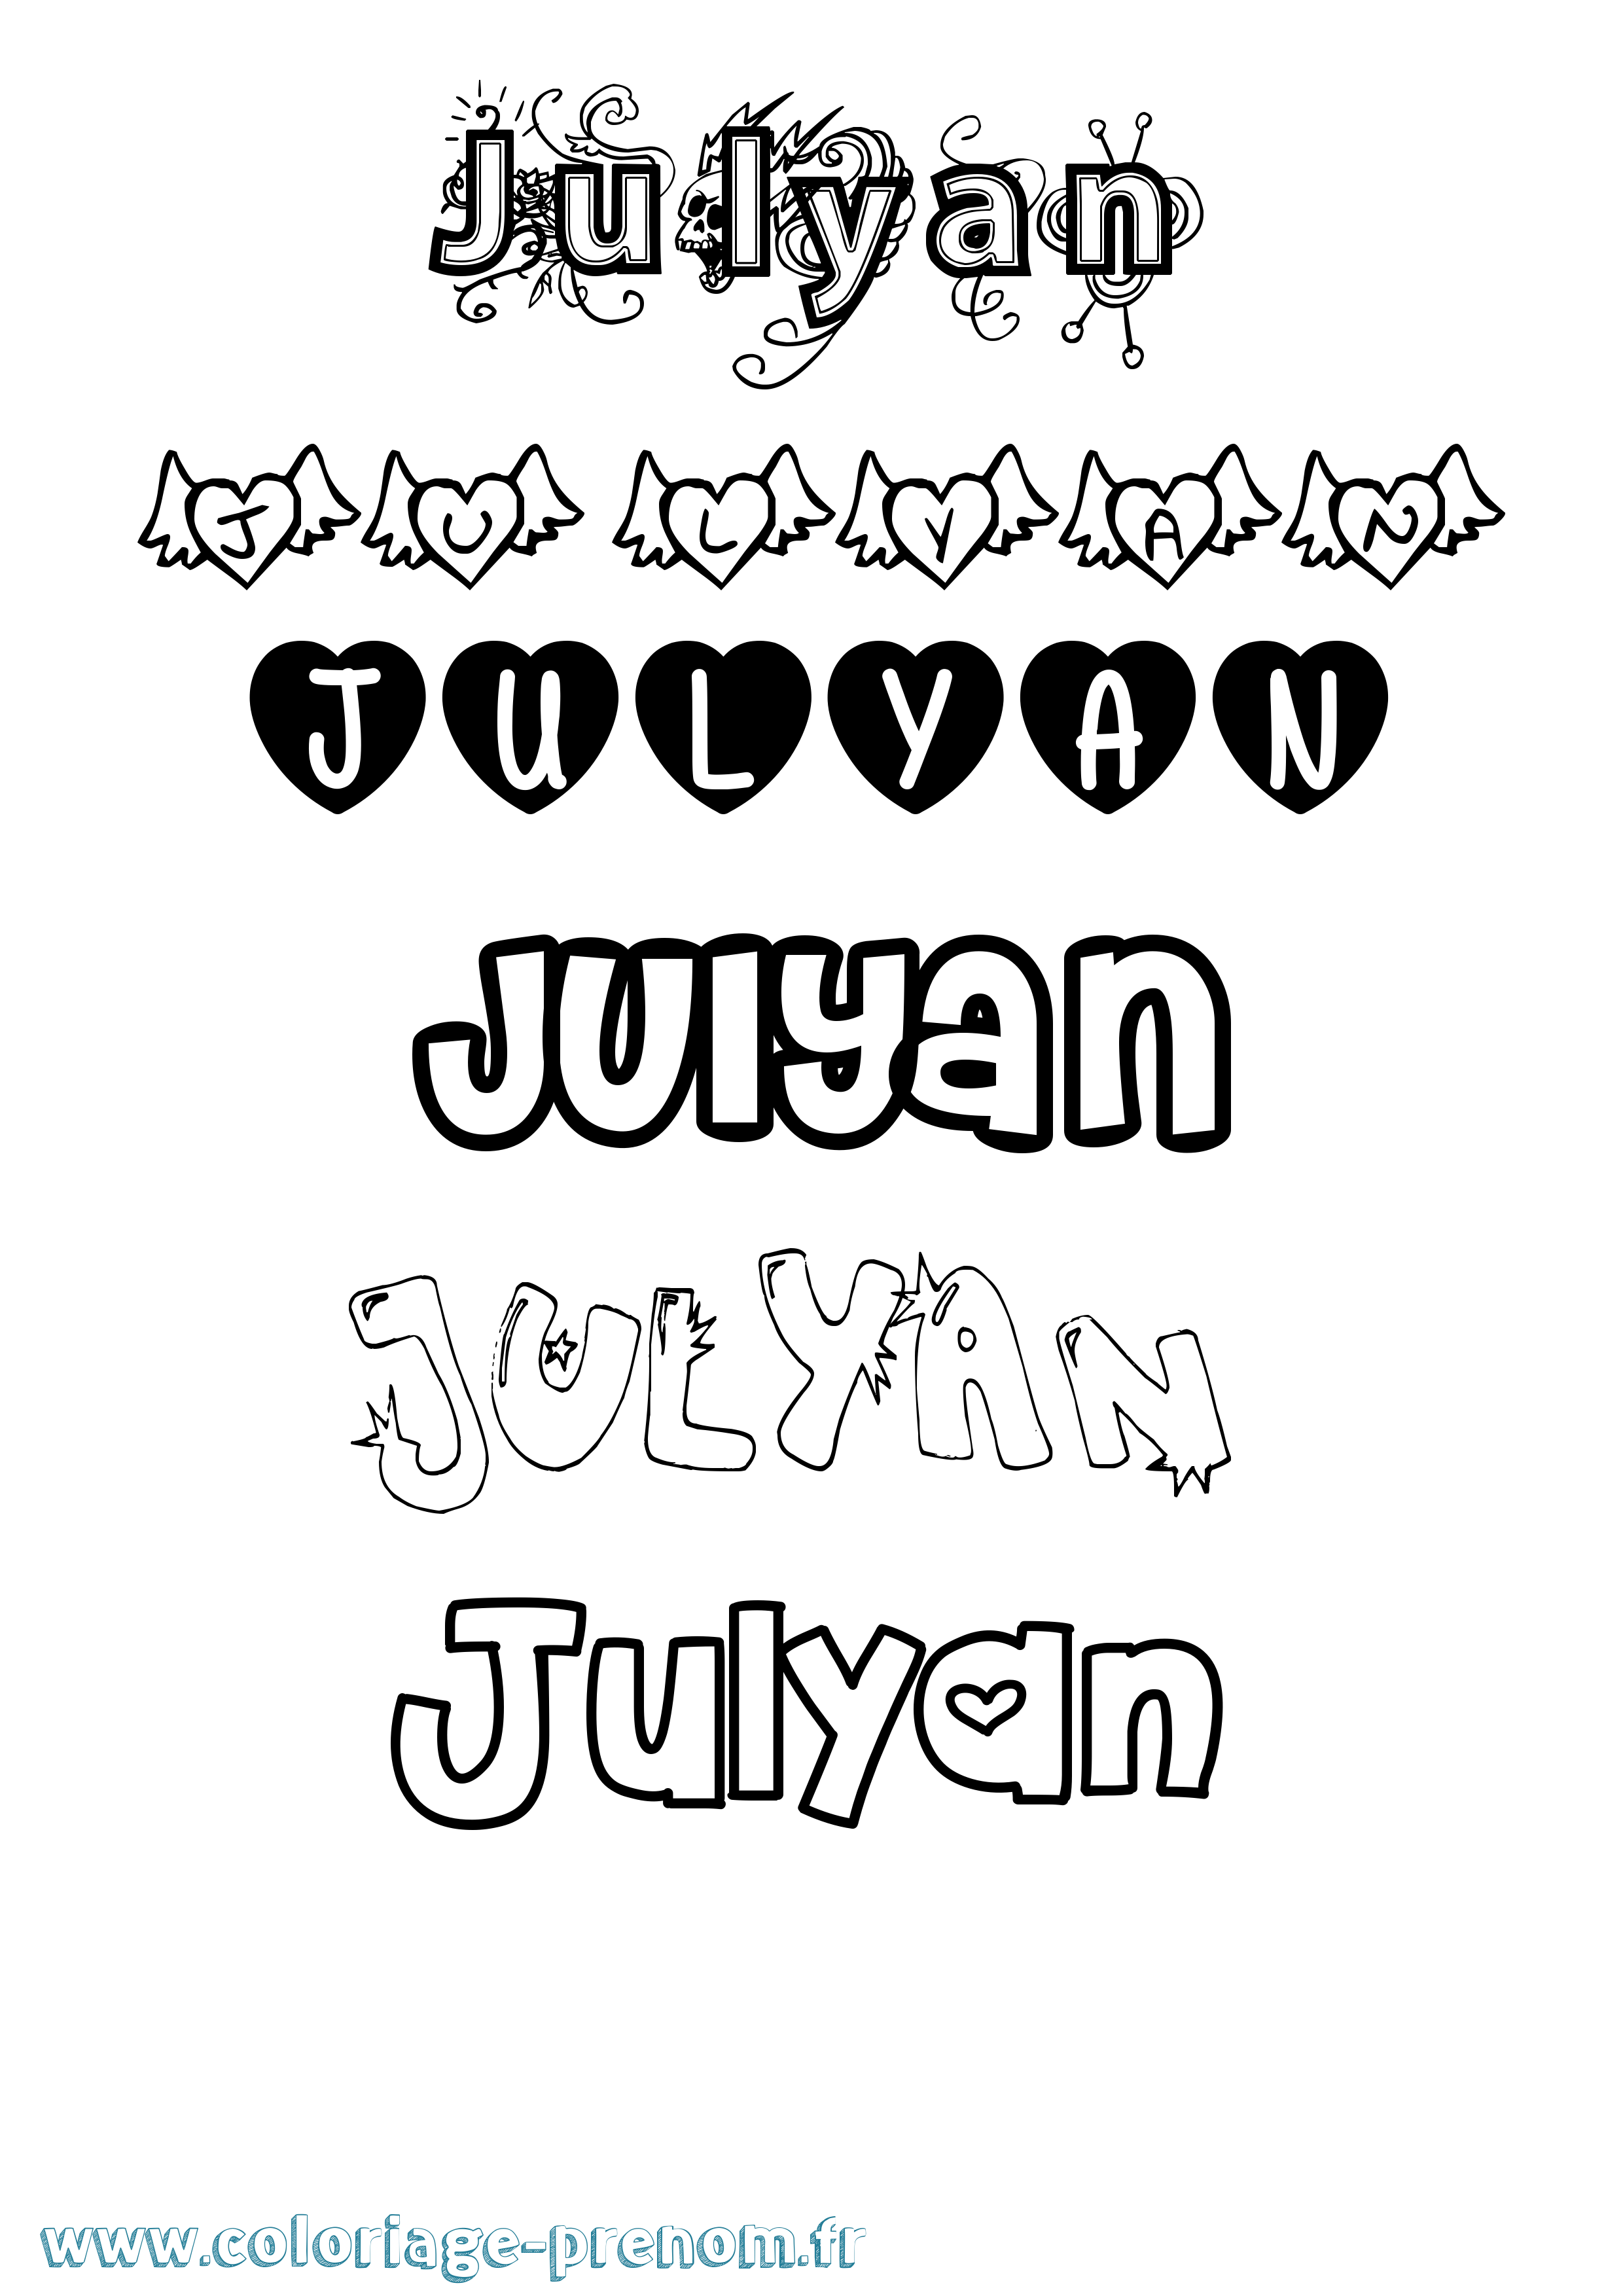 Coloriage prénom Julyan Girly